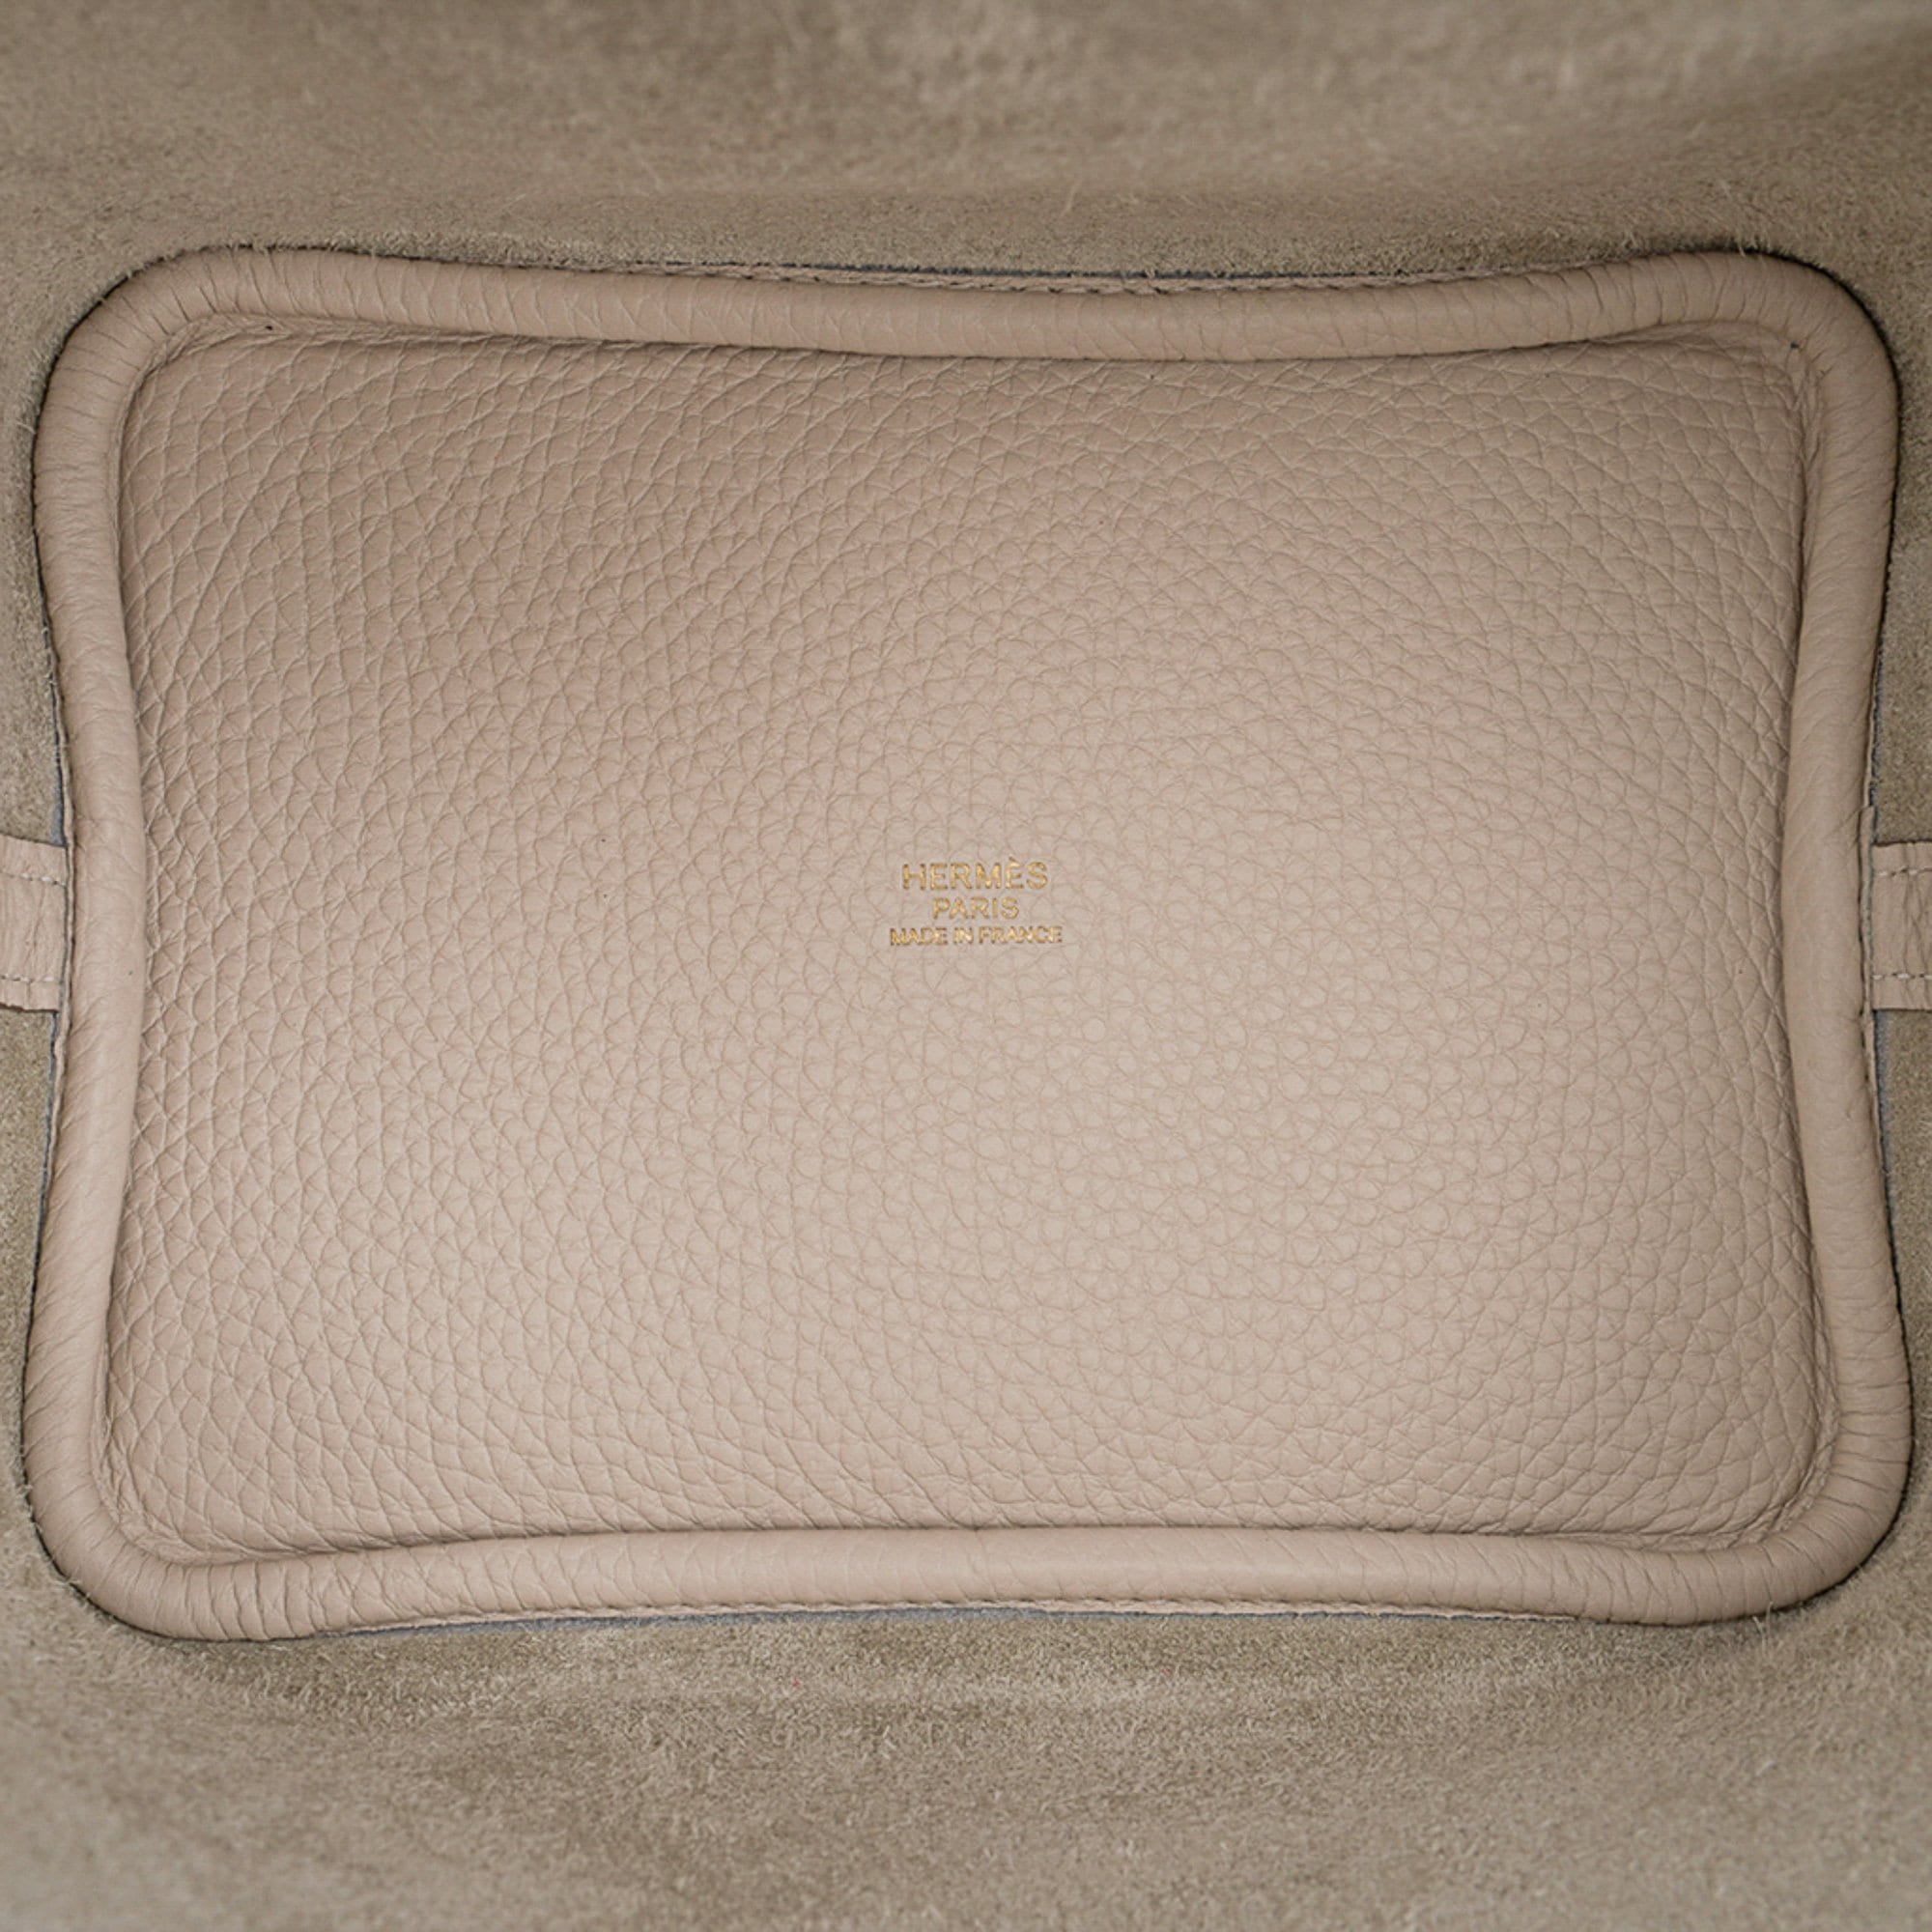 Hermes - Lindy, Picotin & leather bag charms.